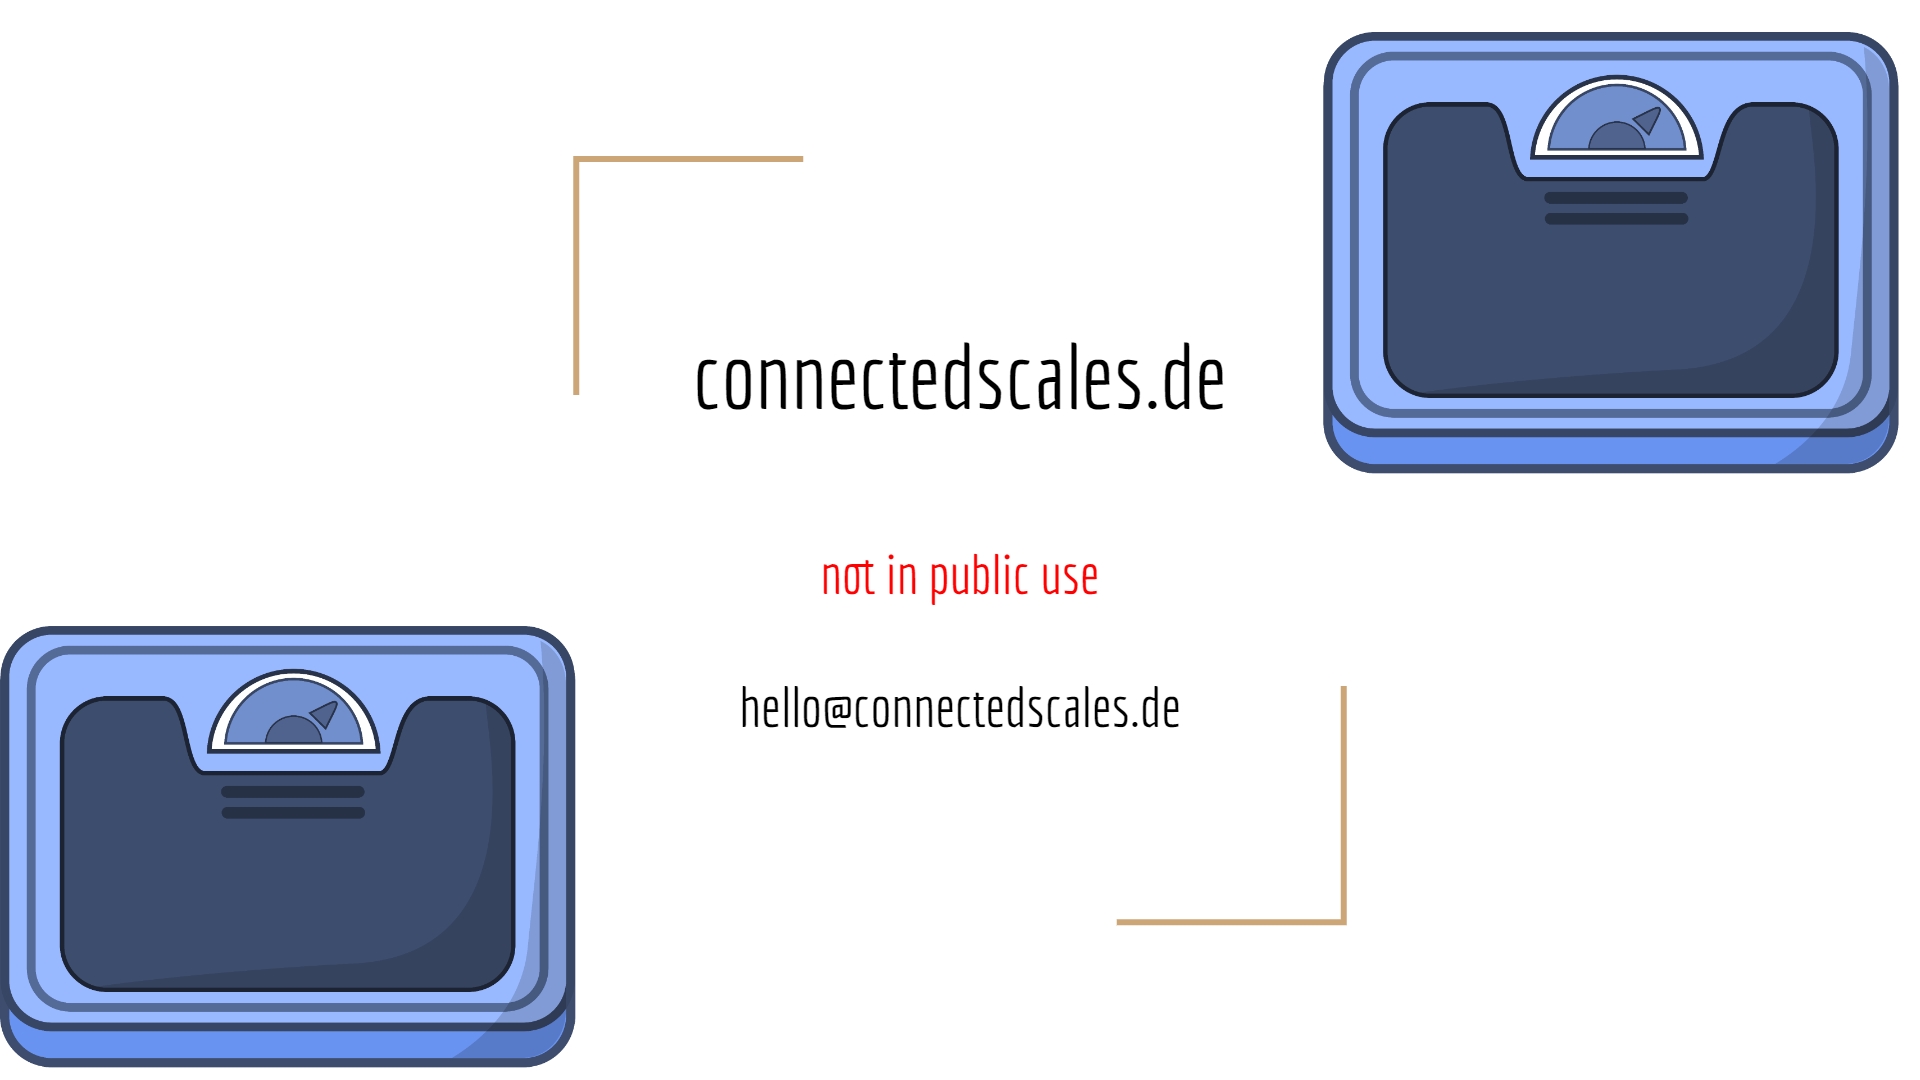 www.connectedscales.de